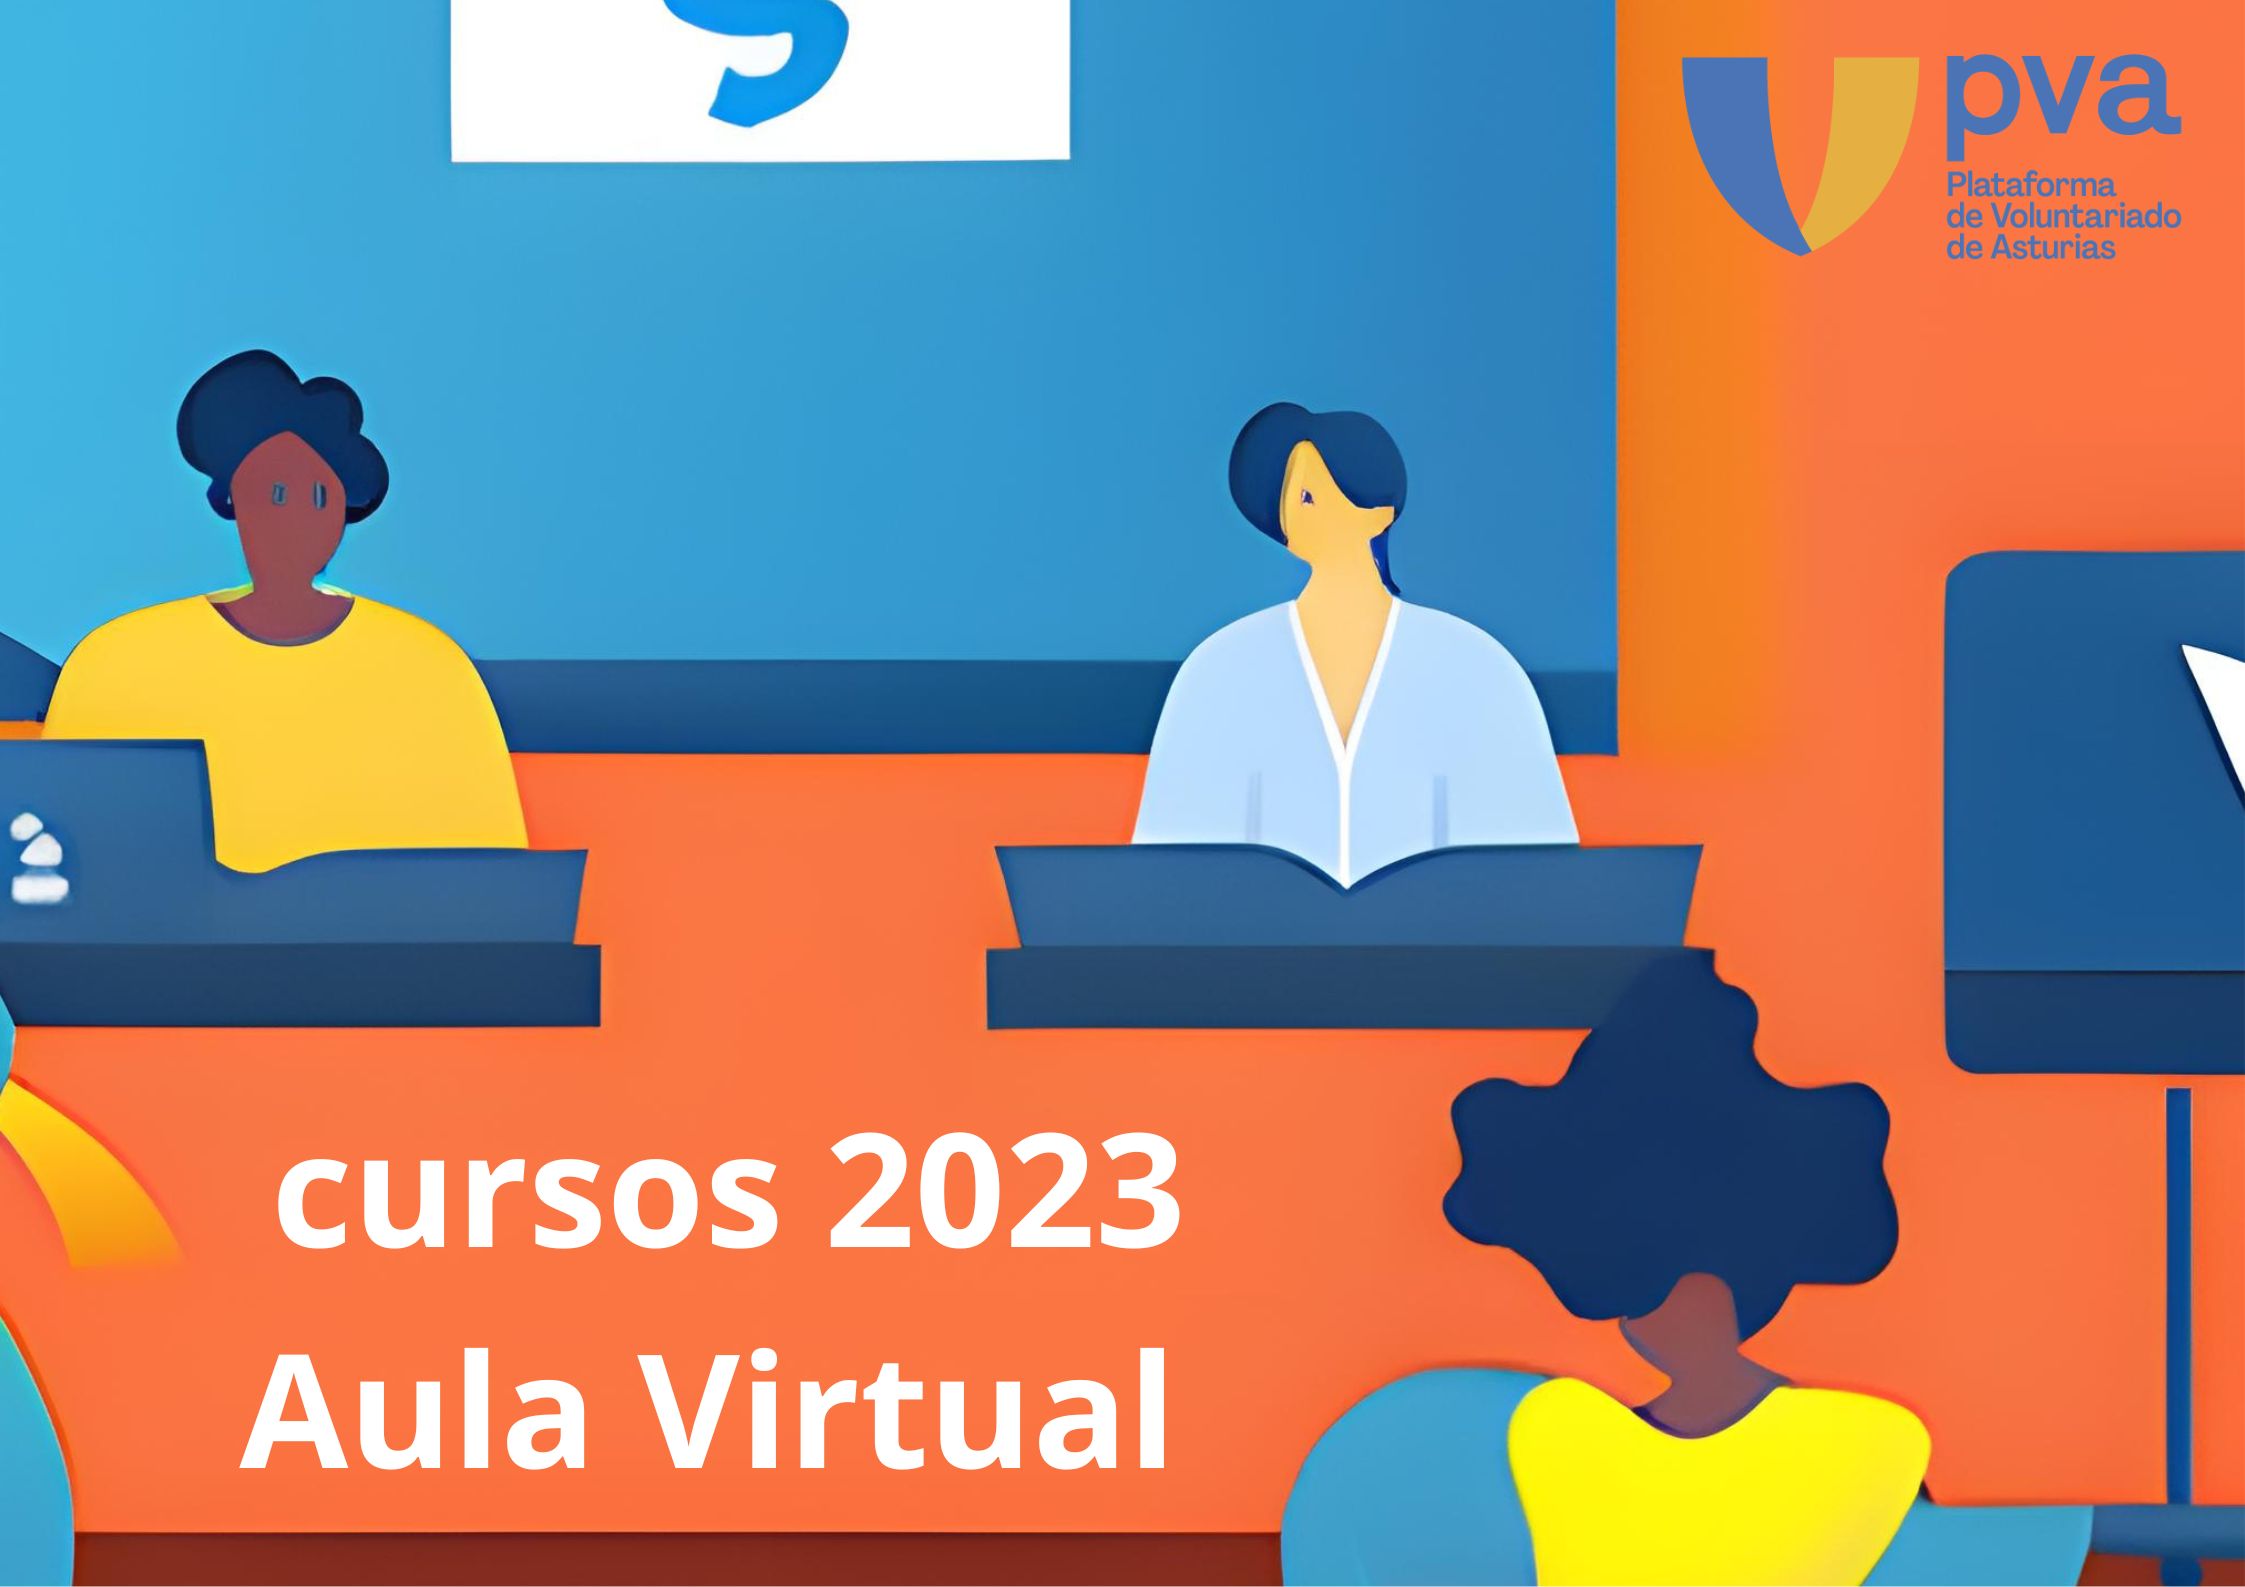 Cursos en el Aula Virtual de la Plataforma de Voluntariado de Asturias